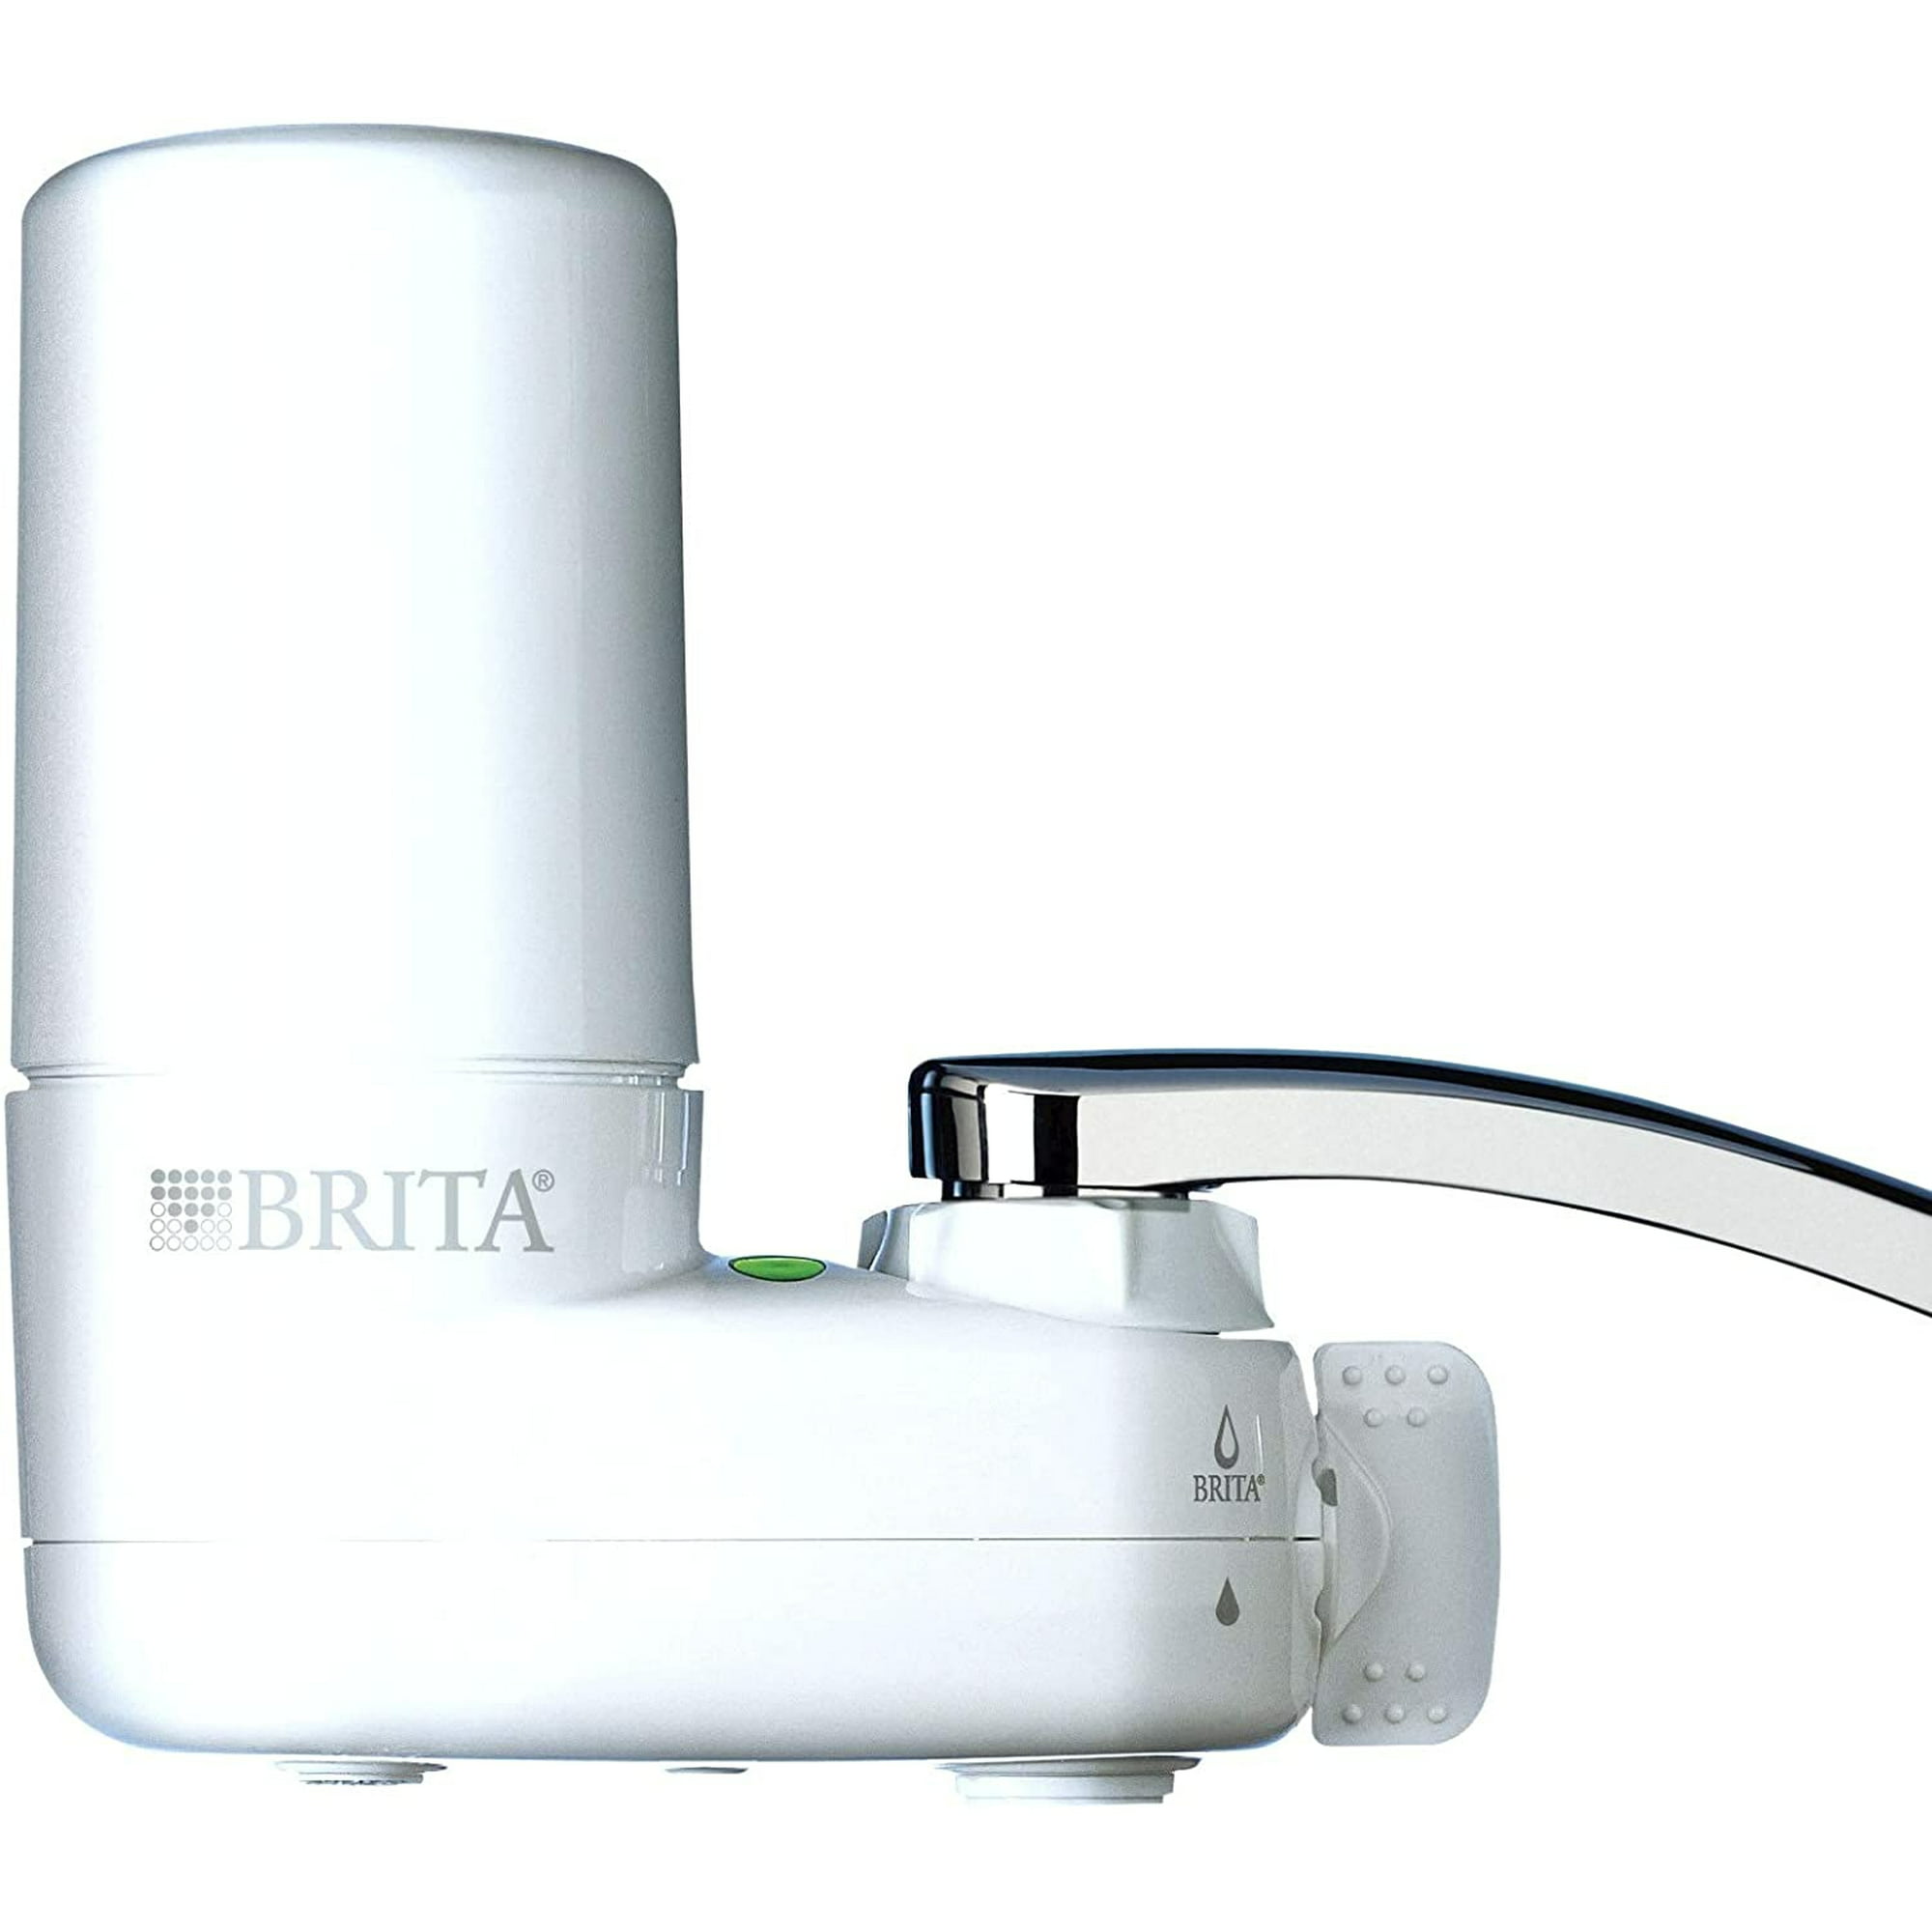 BRITA On Tap - Sistema de Filtración, Agua Filtrada de Óptimo